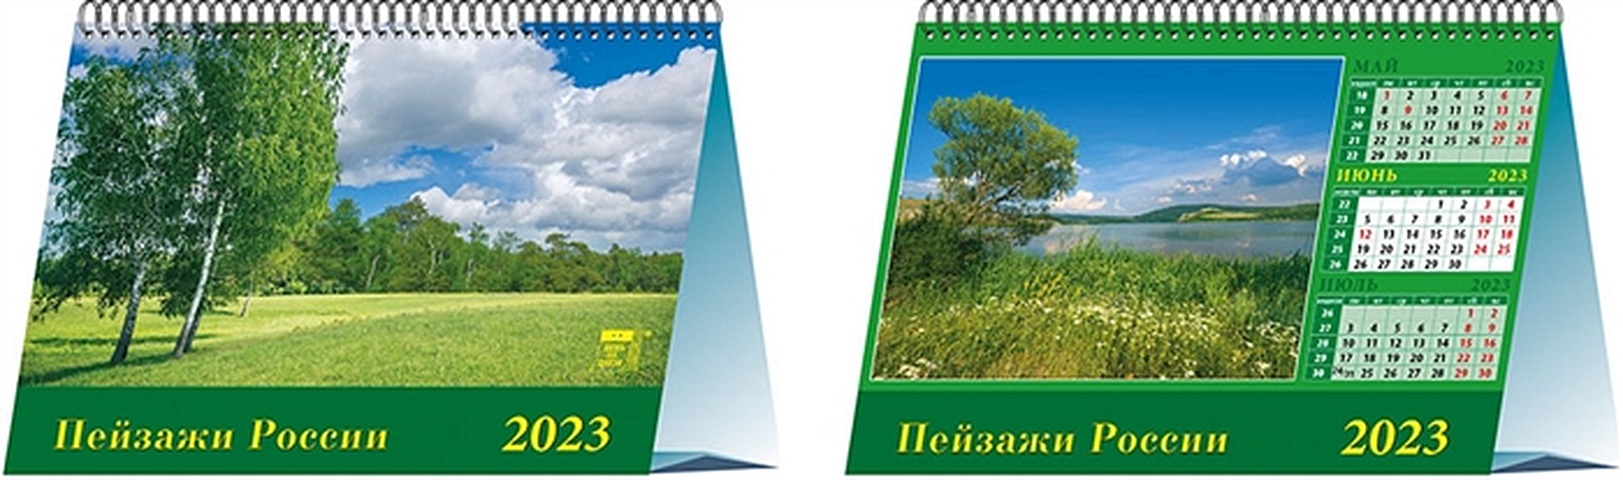 Календарь настольный на 2023 год Пейзажи России